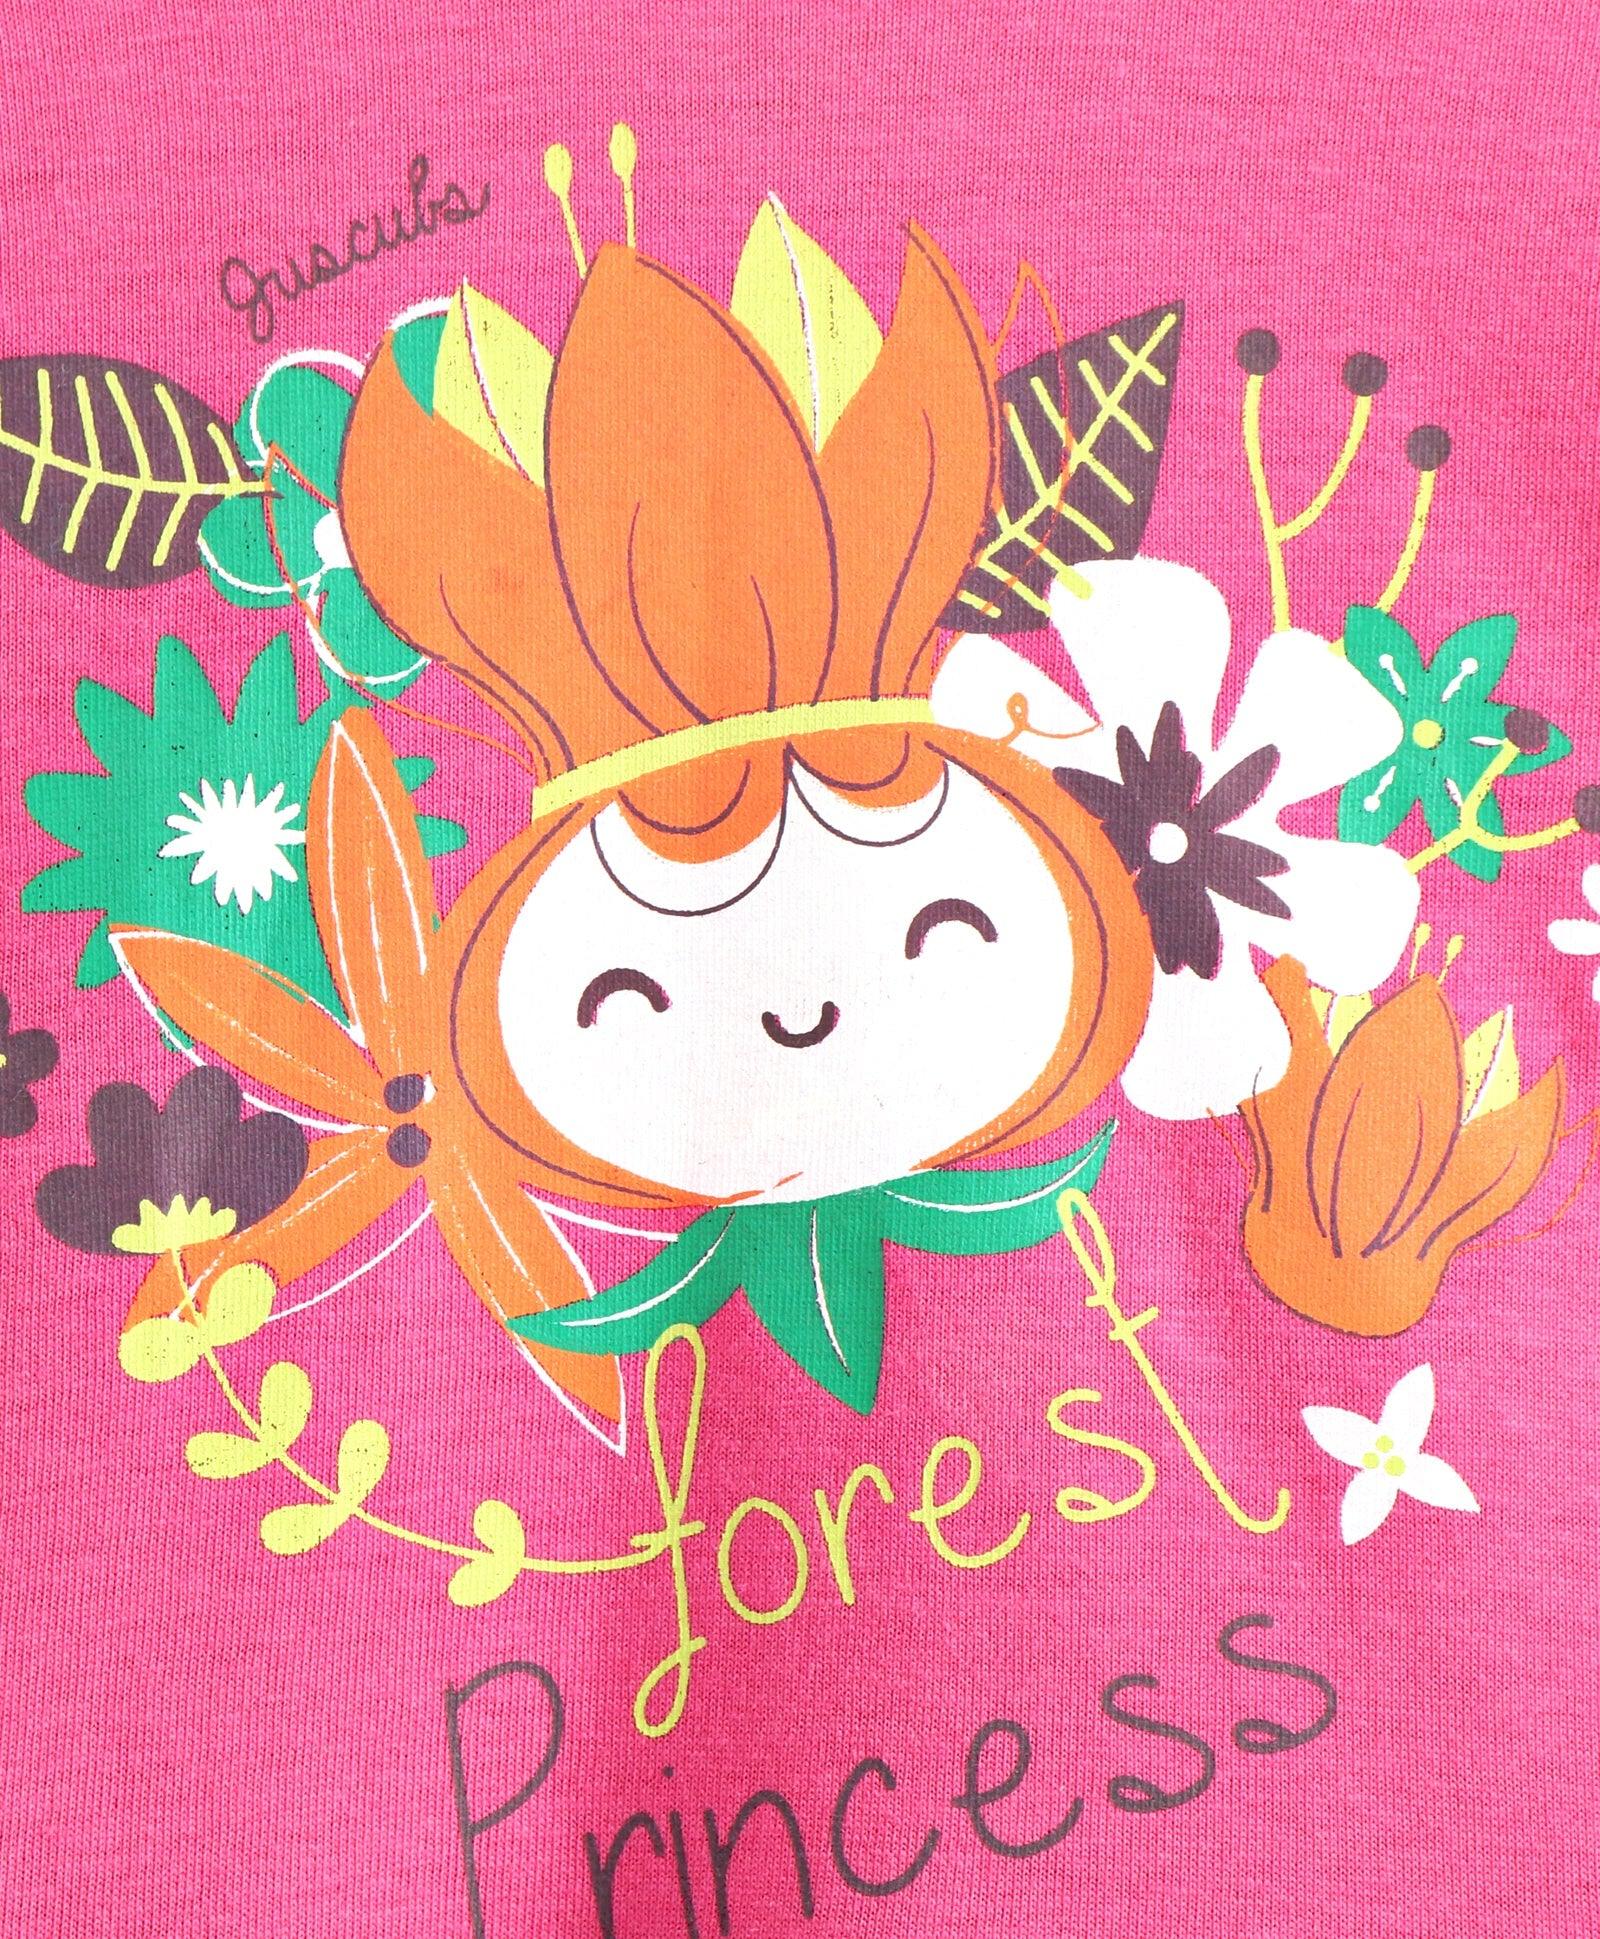 Girls Forest Princess Dress - Green & Pink - Juscubs